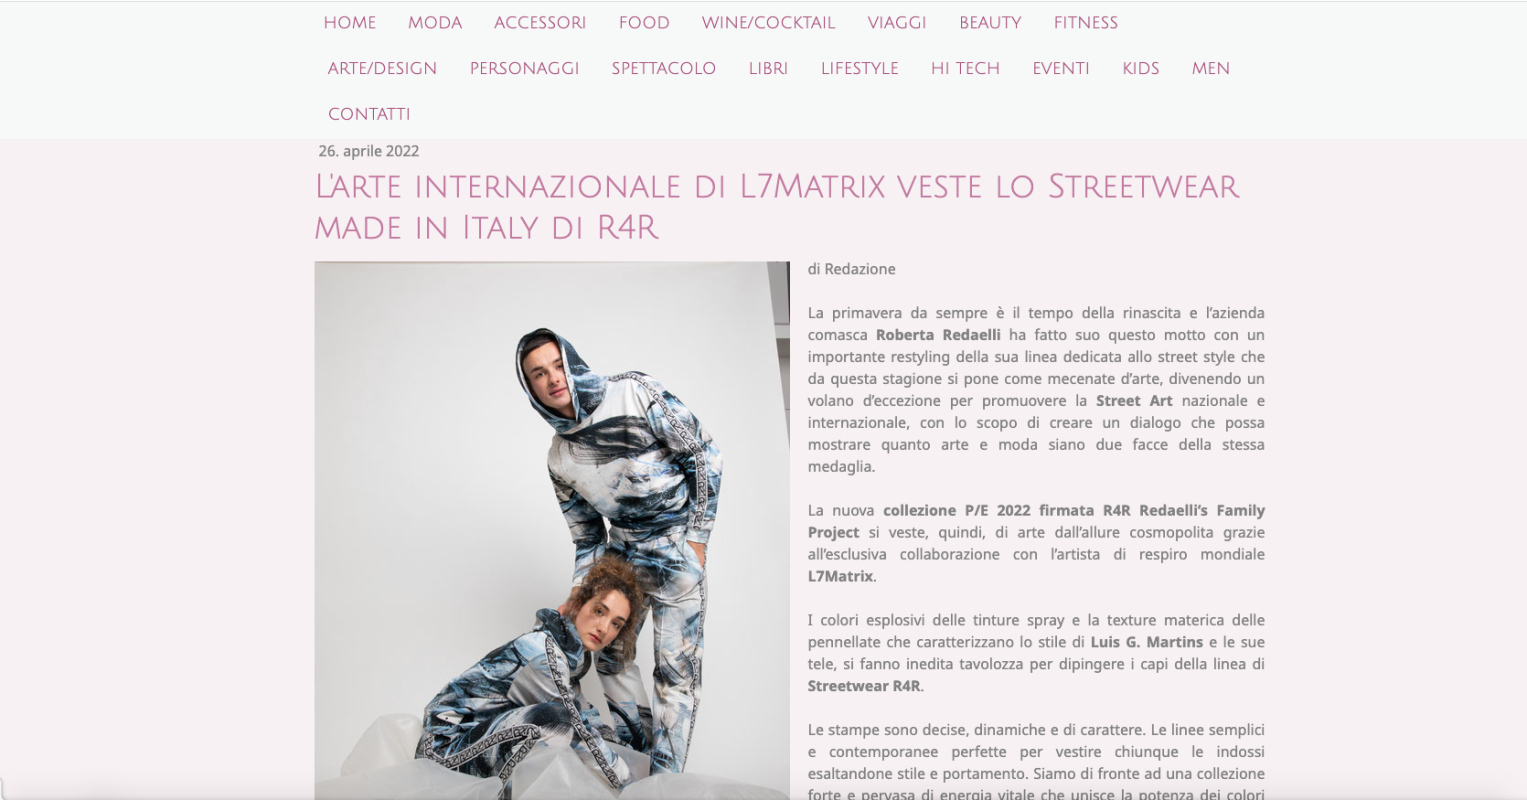 Pink and chic presenta la nuova collezione R4R Readaelli's family project  per la pe 2022 realizzata in collaborazione con l'artista internazionale L7Matrix